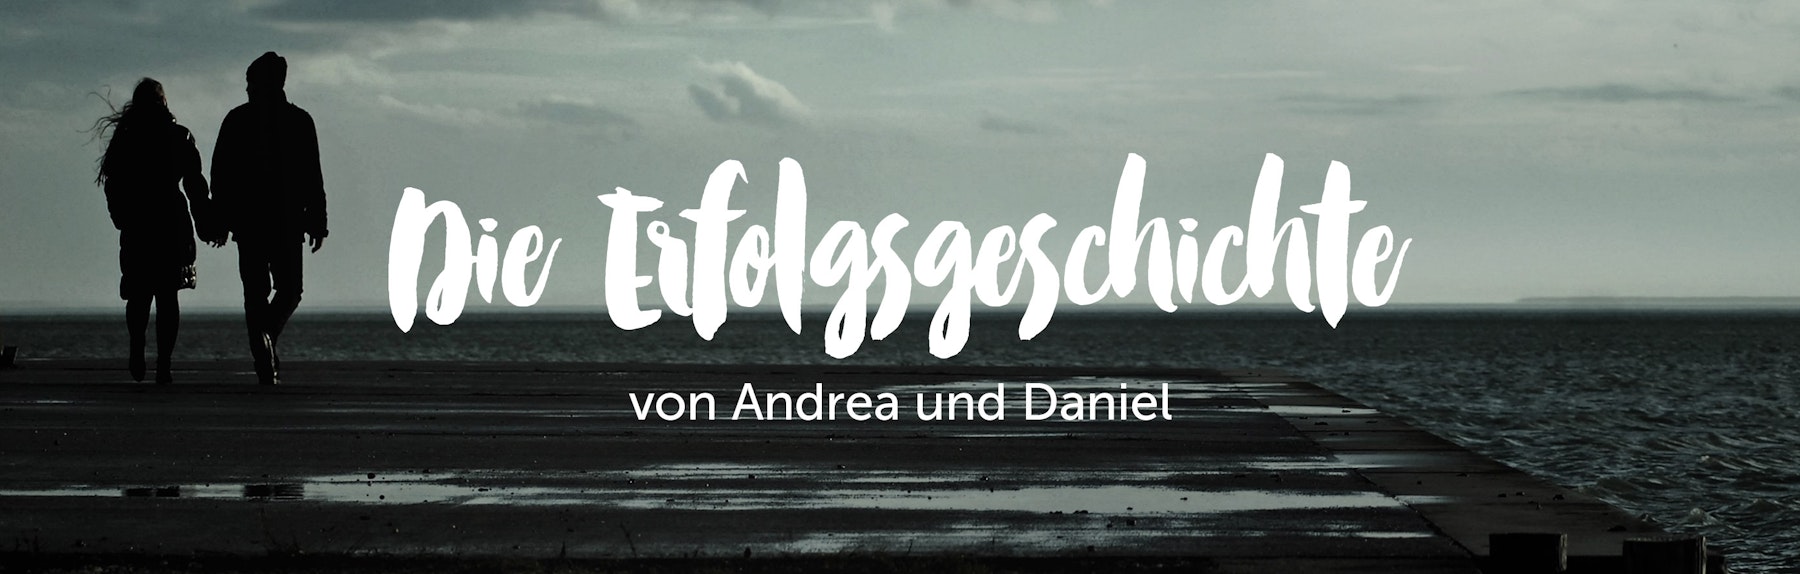 Die Erfolgsgeschichte von Andrea und Daniel